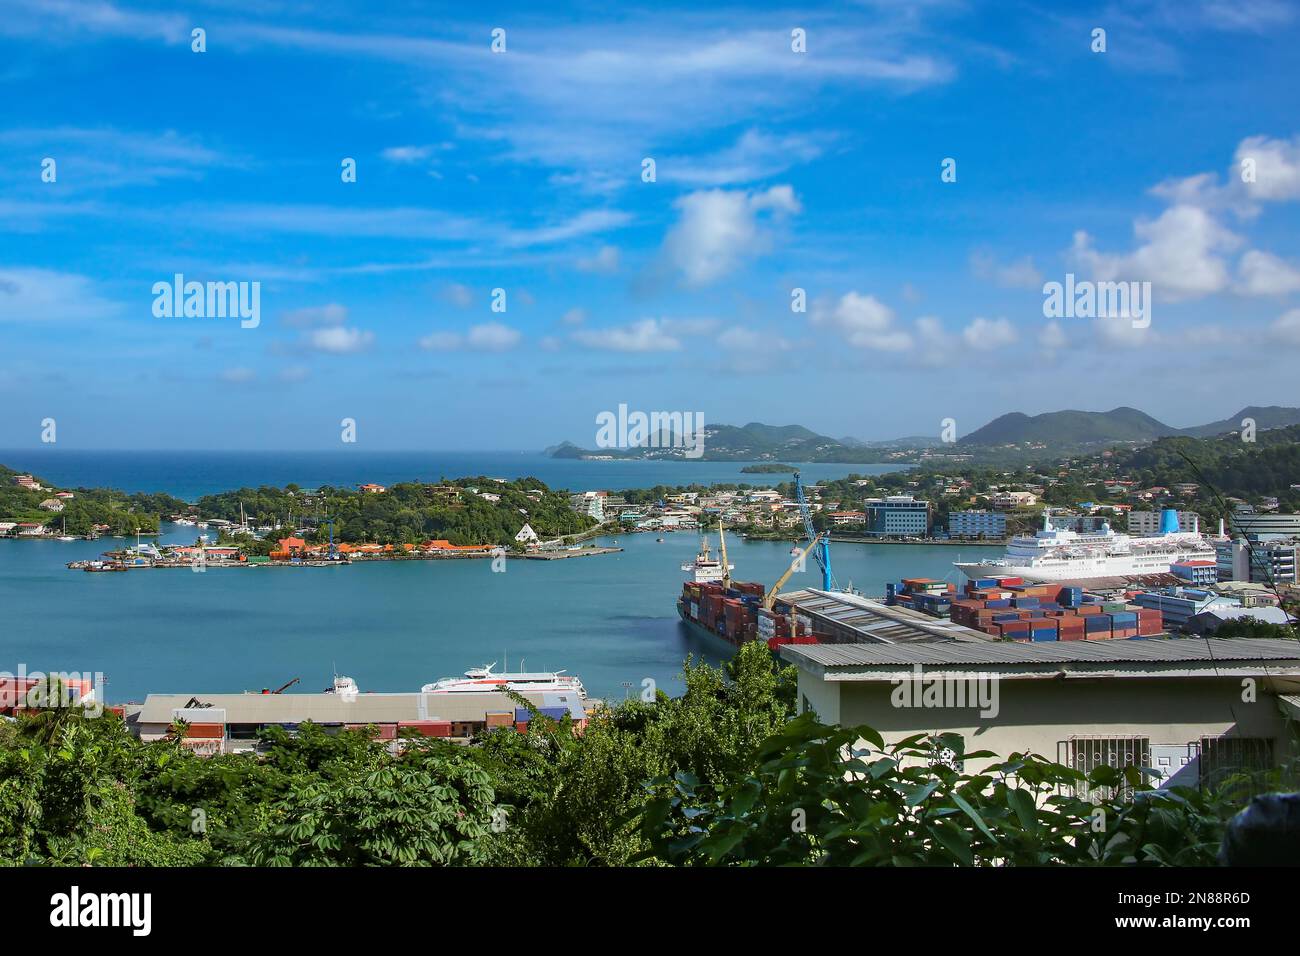 Dans la vallée en direction de la ville de Castries, St Lucia. Montre la ville et le port avec un bateau de croisière amarré. Banque D'Images